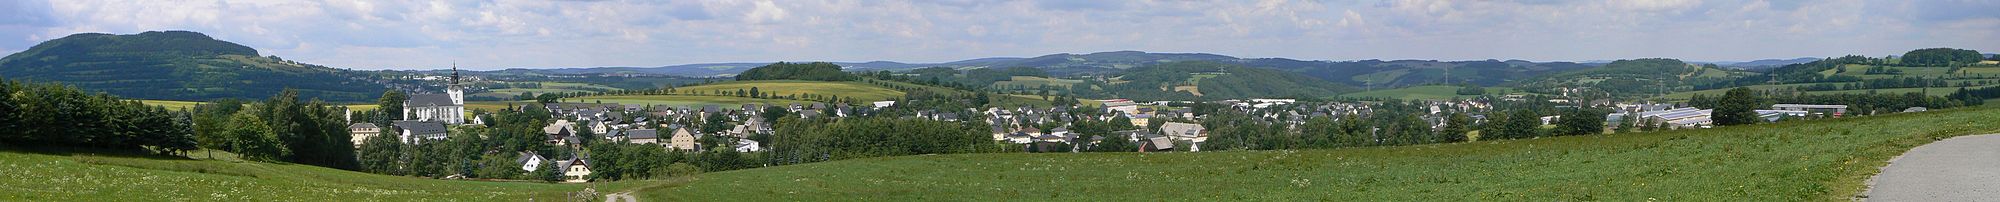 Panorama-Aufnahme des nordlichen Teils von Mildenau mit dem Pöhlberg